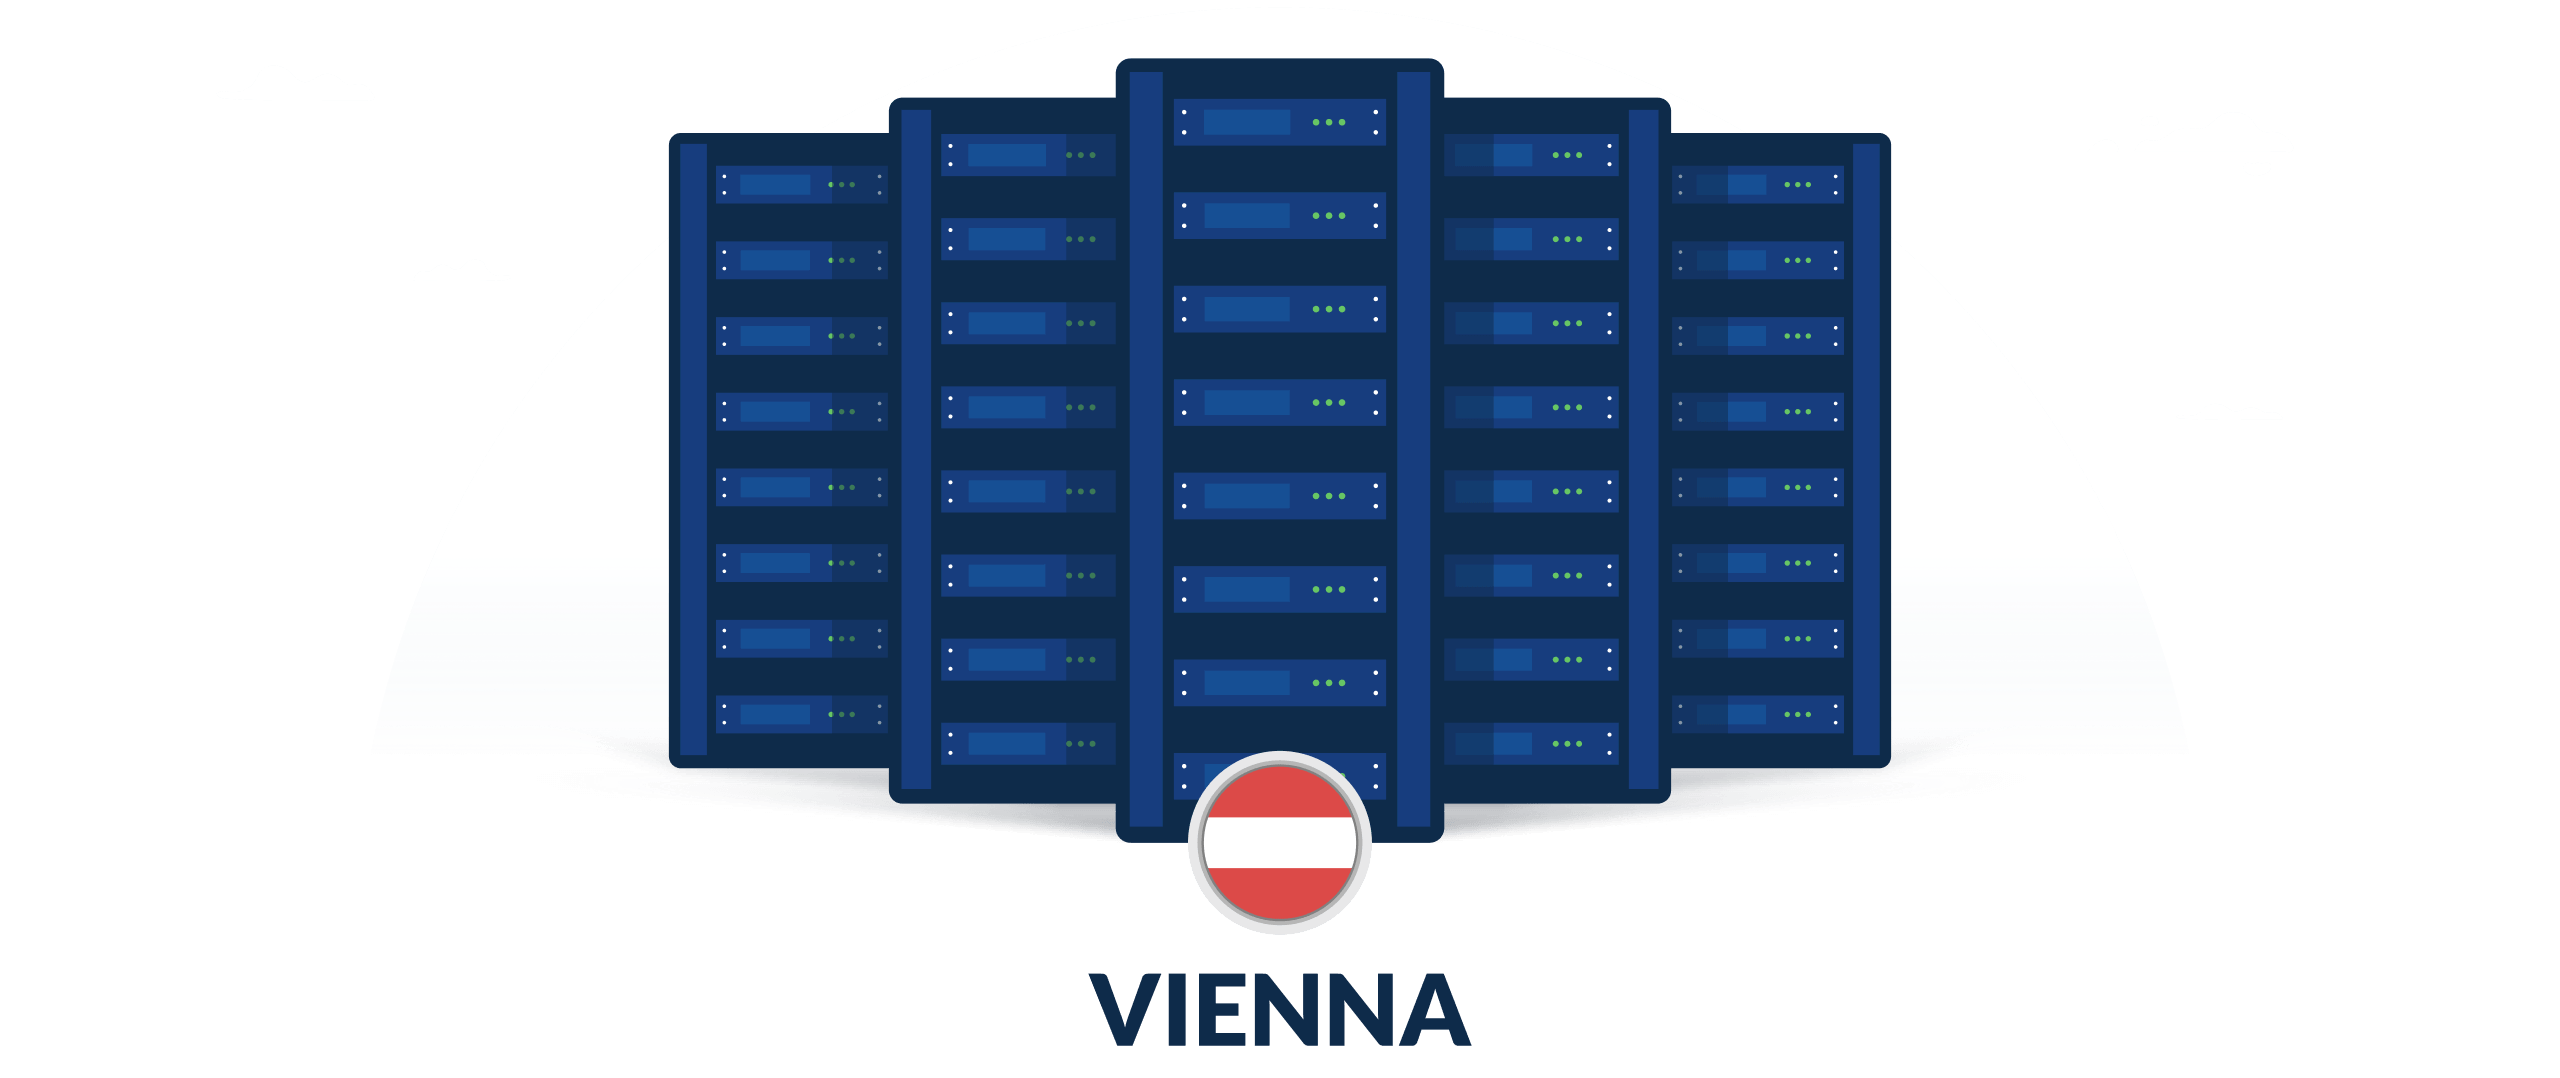 VPN servers in Vienna, Austria